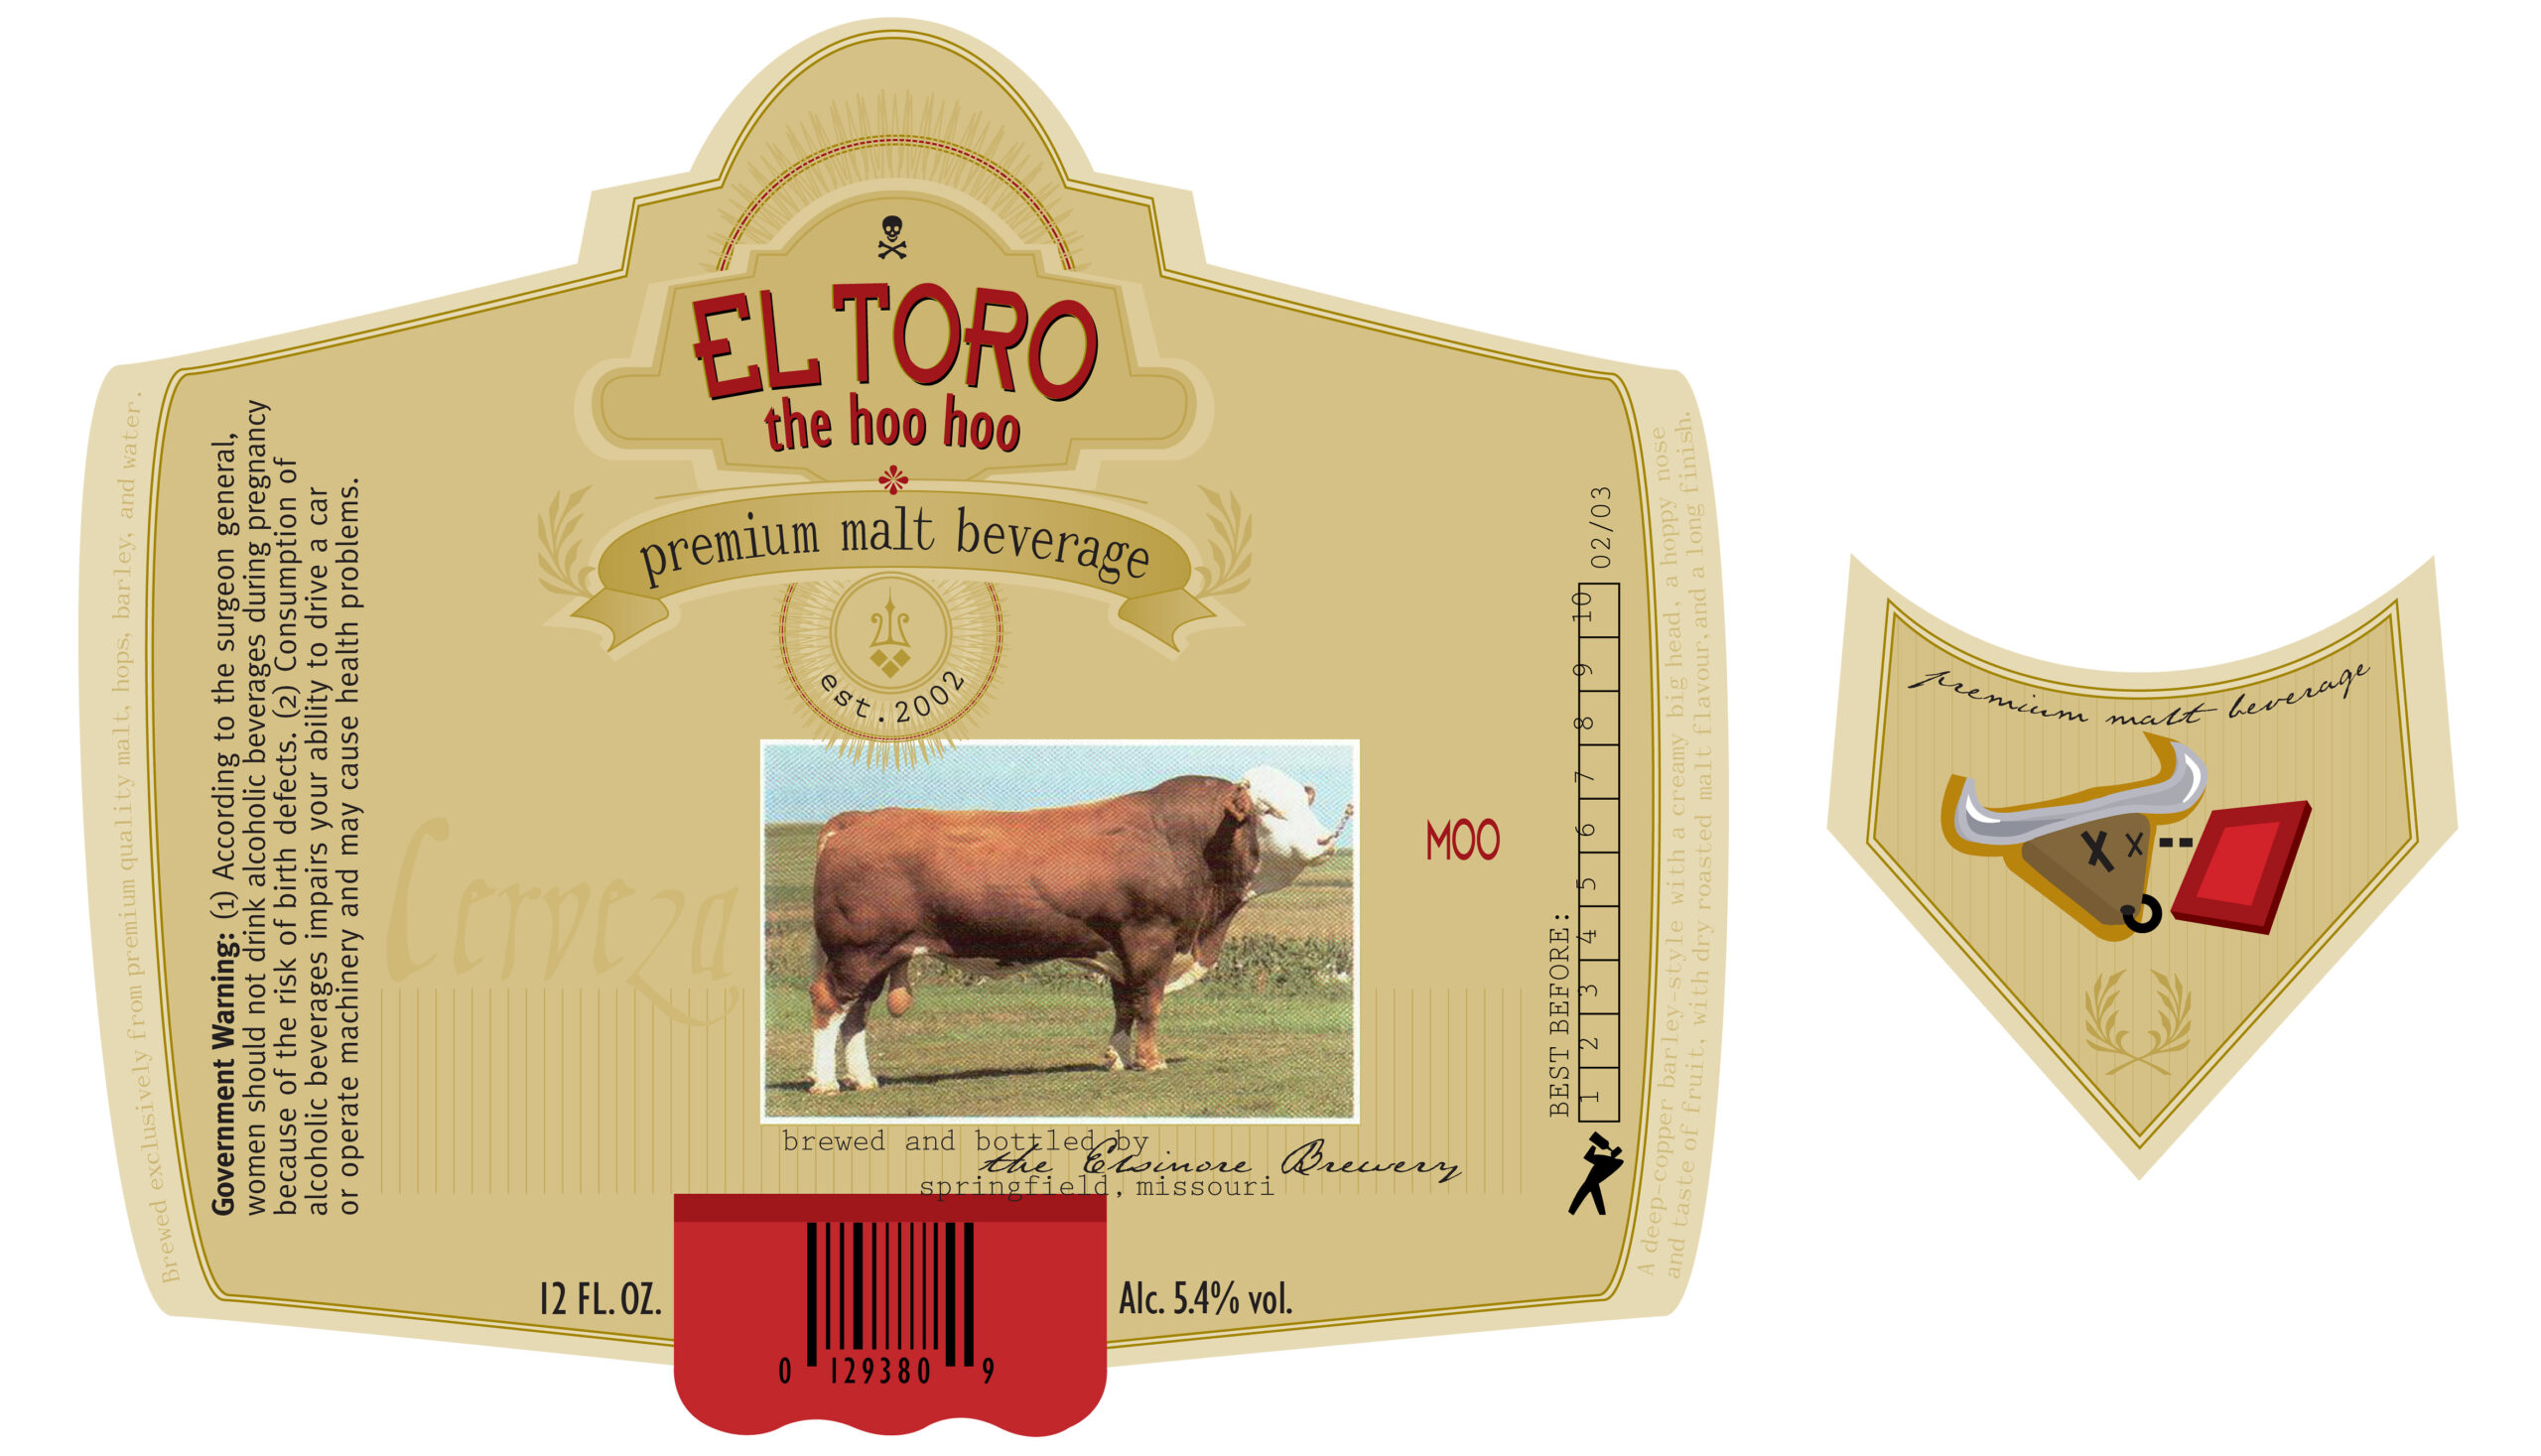 El Toro the Hoo Hoo beer label